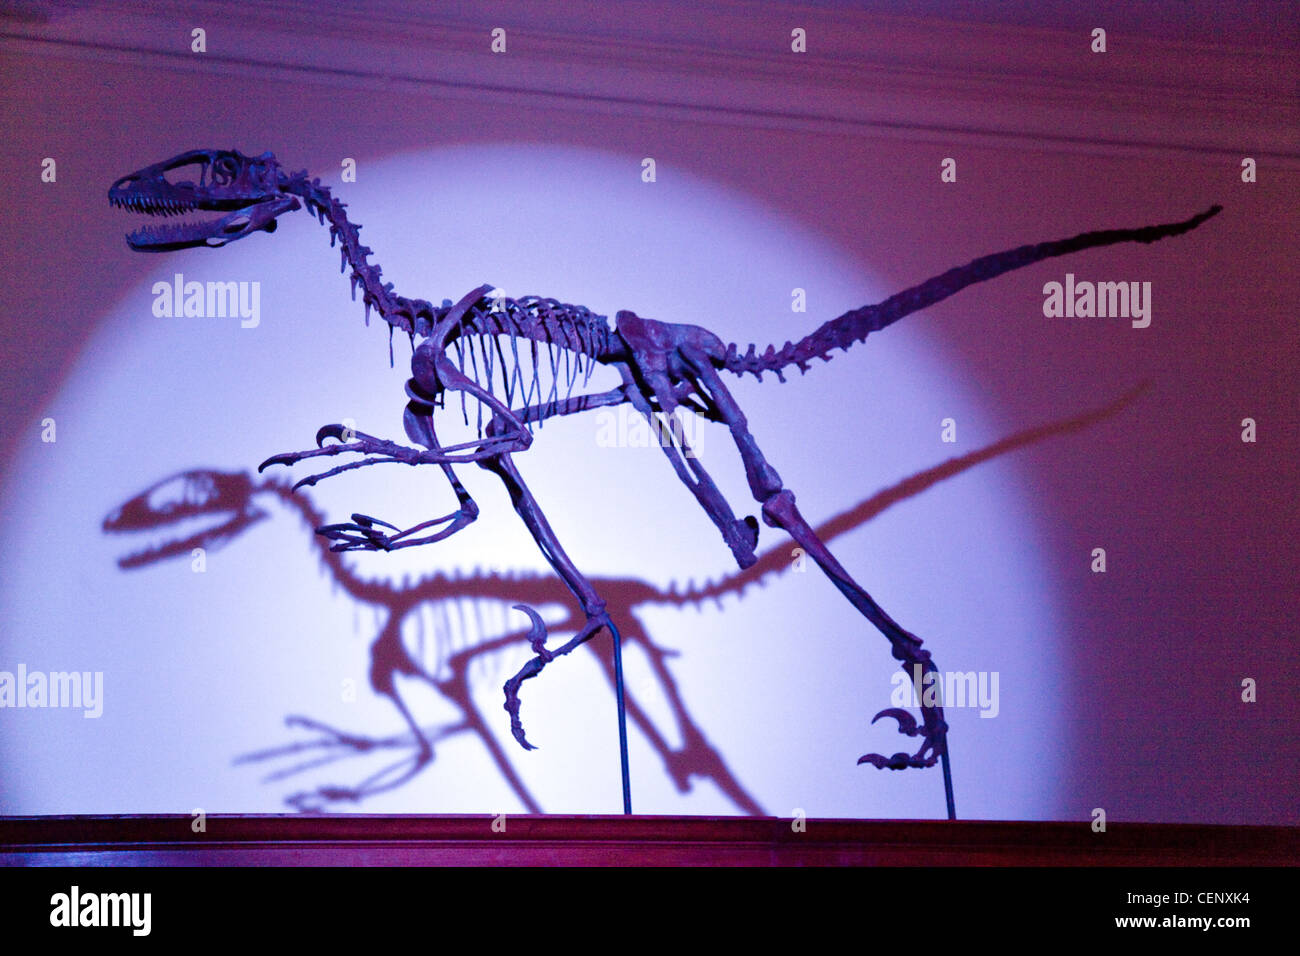 Ein kleiner Dinosaurier Skelett leuchtet im violetten Licht, Sedgwick Geowissenschaften Museum, Cambridge UK Stockfoto